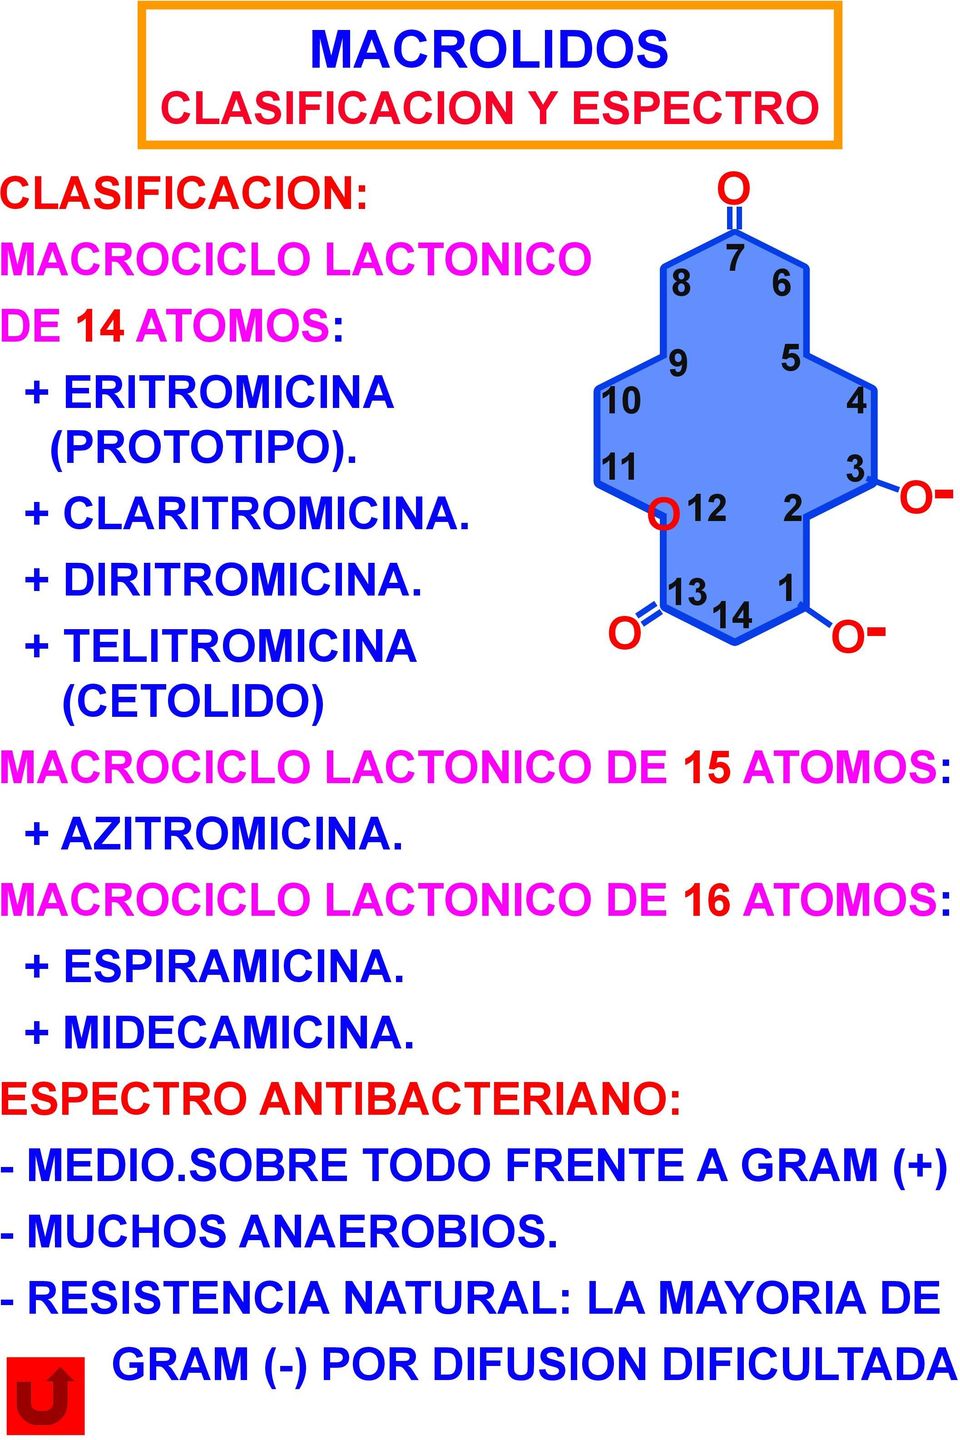 MACROCICLO LACTONICO DE 16 ATOMOS: + ESPIRAMICINA. + MIDECAMICINA. ESPECTRO ANTIBACTERIANO: - MEDIO.